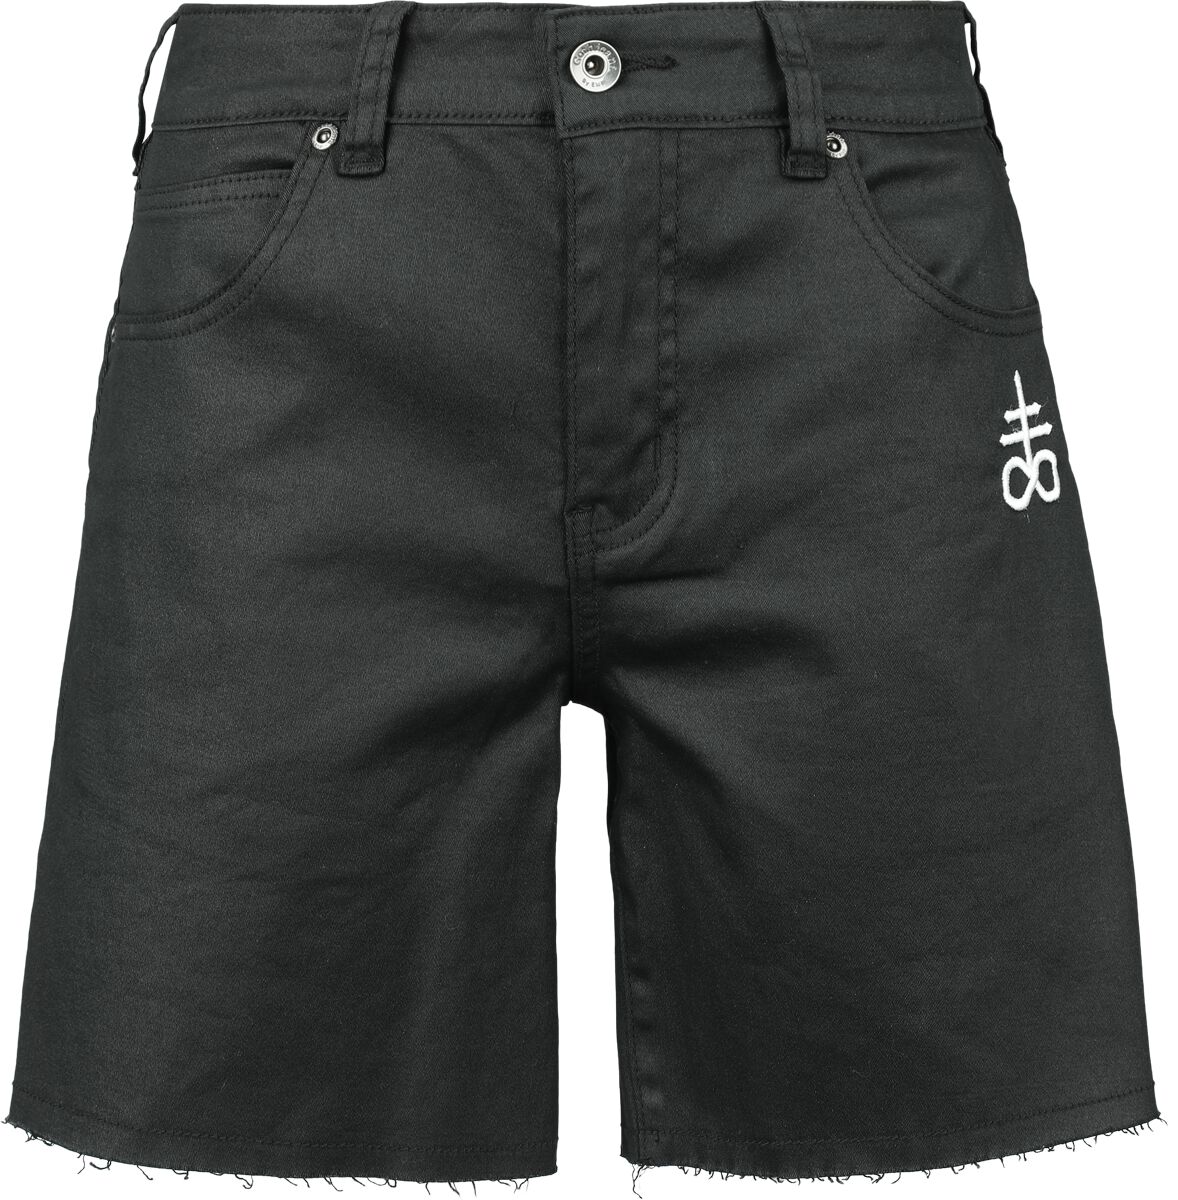 Black Blood by Gothicana - Gothic Short - Coated Shorts with Small Embroidery - 27 bis 31 - für Damen - Größe 30 - schwarz